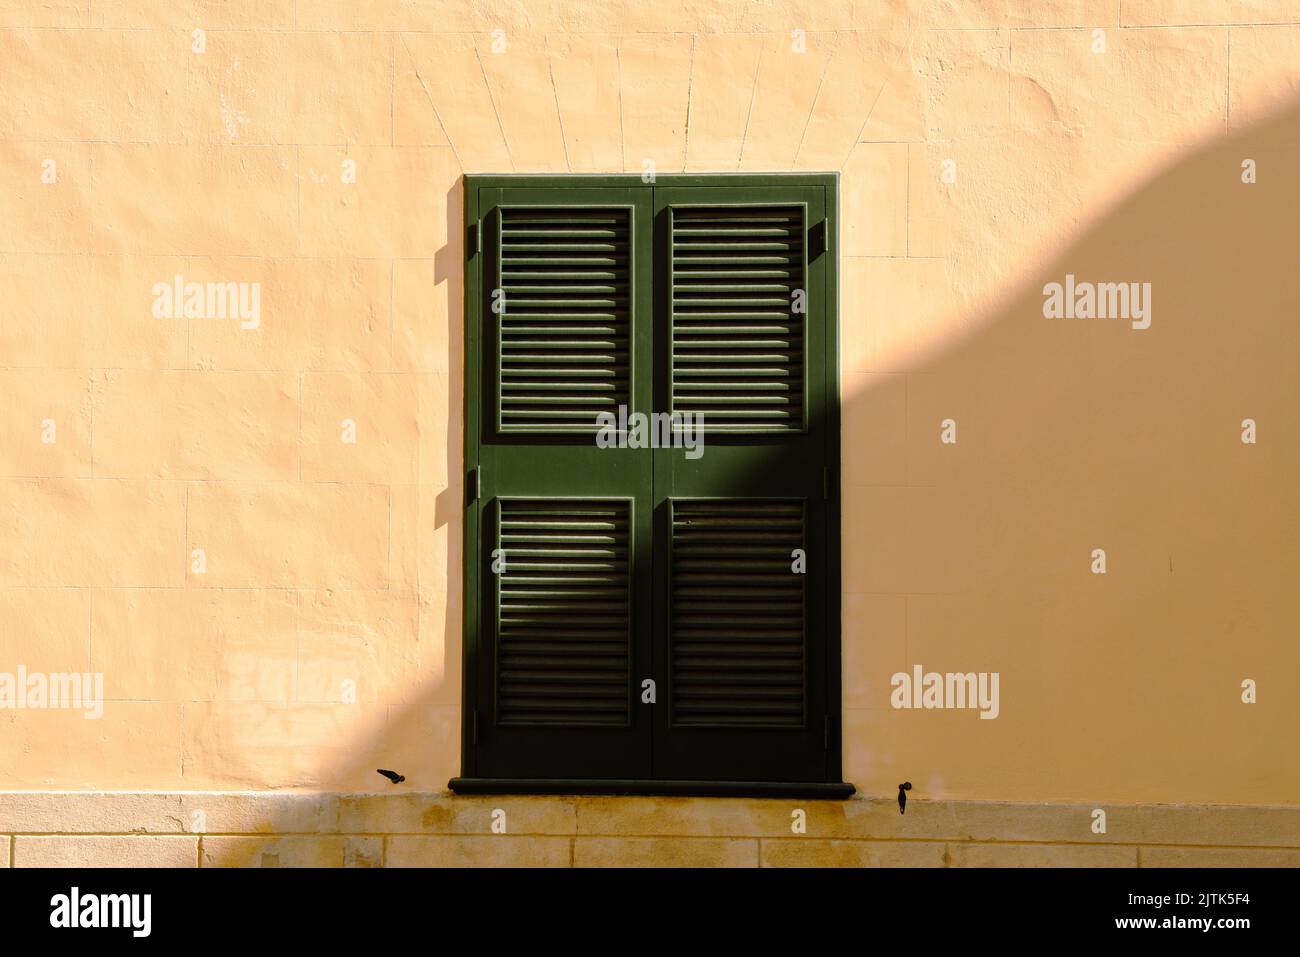 Tradicional ventana española con persianas a la luz del sol de la mañana Foto de stock